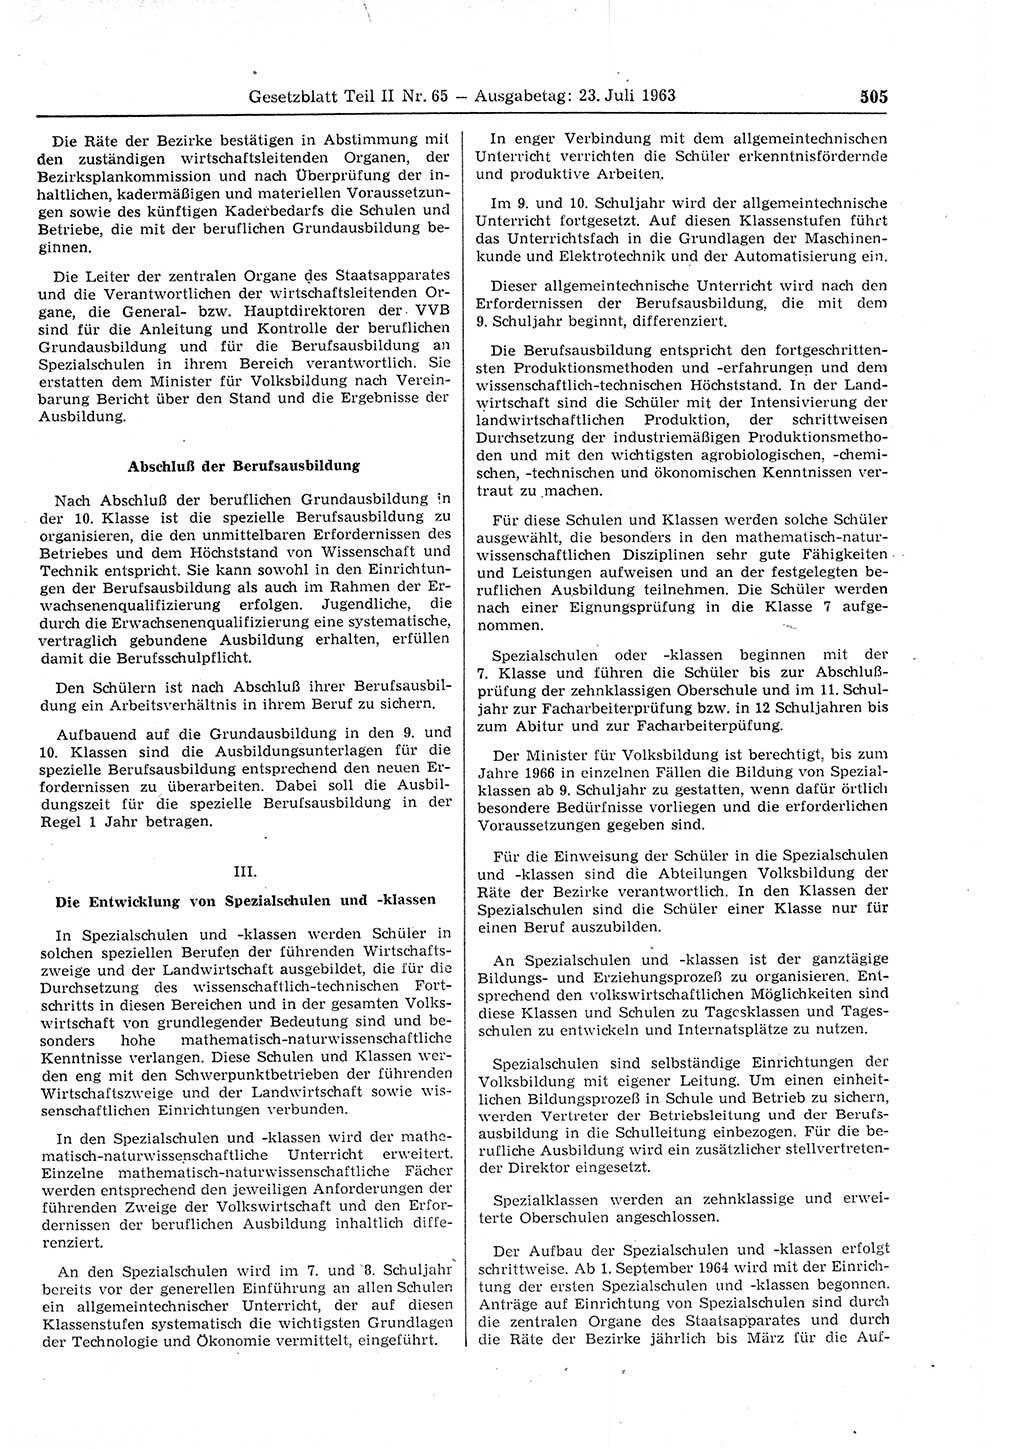 Gesetzblatt (GBl.) der Deutschen Demokratischen Republik (DDR) Teil ⅠⅠ 1963, Seite 505 (GBl. DDR ⅠⅠ 1963, S. 505)